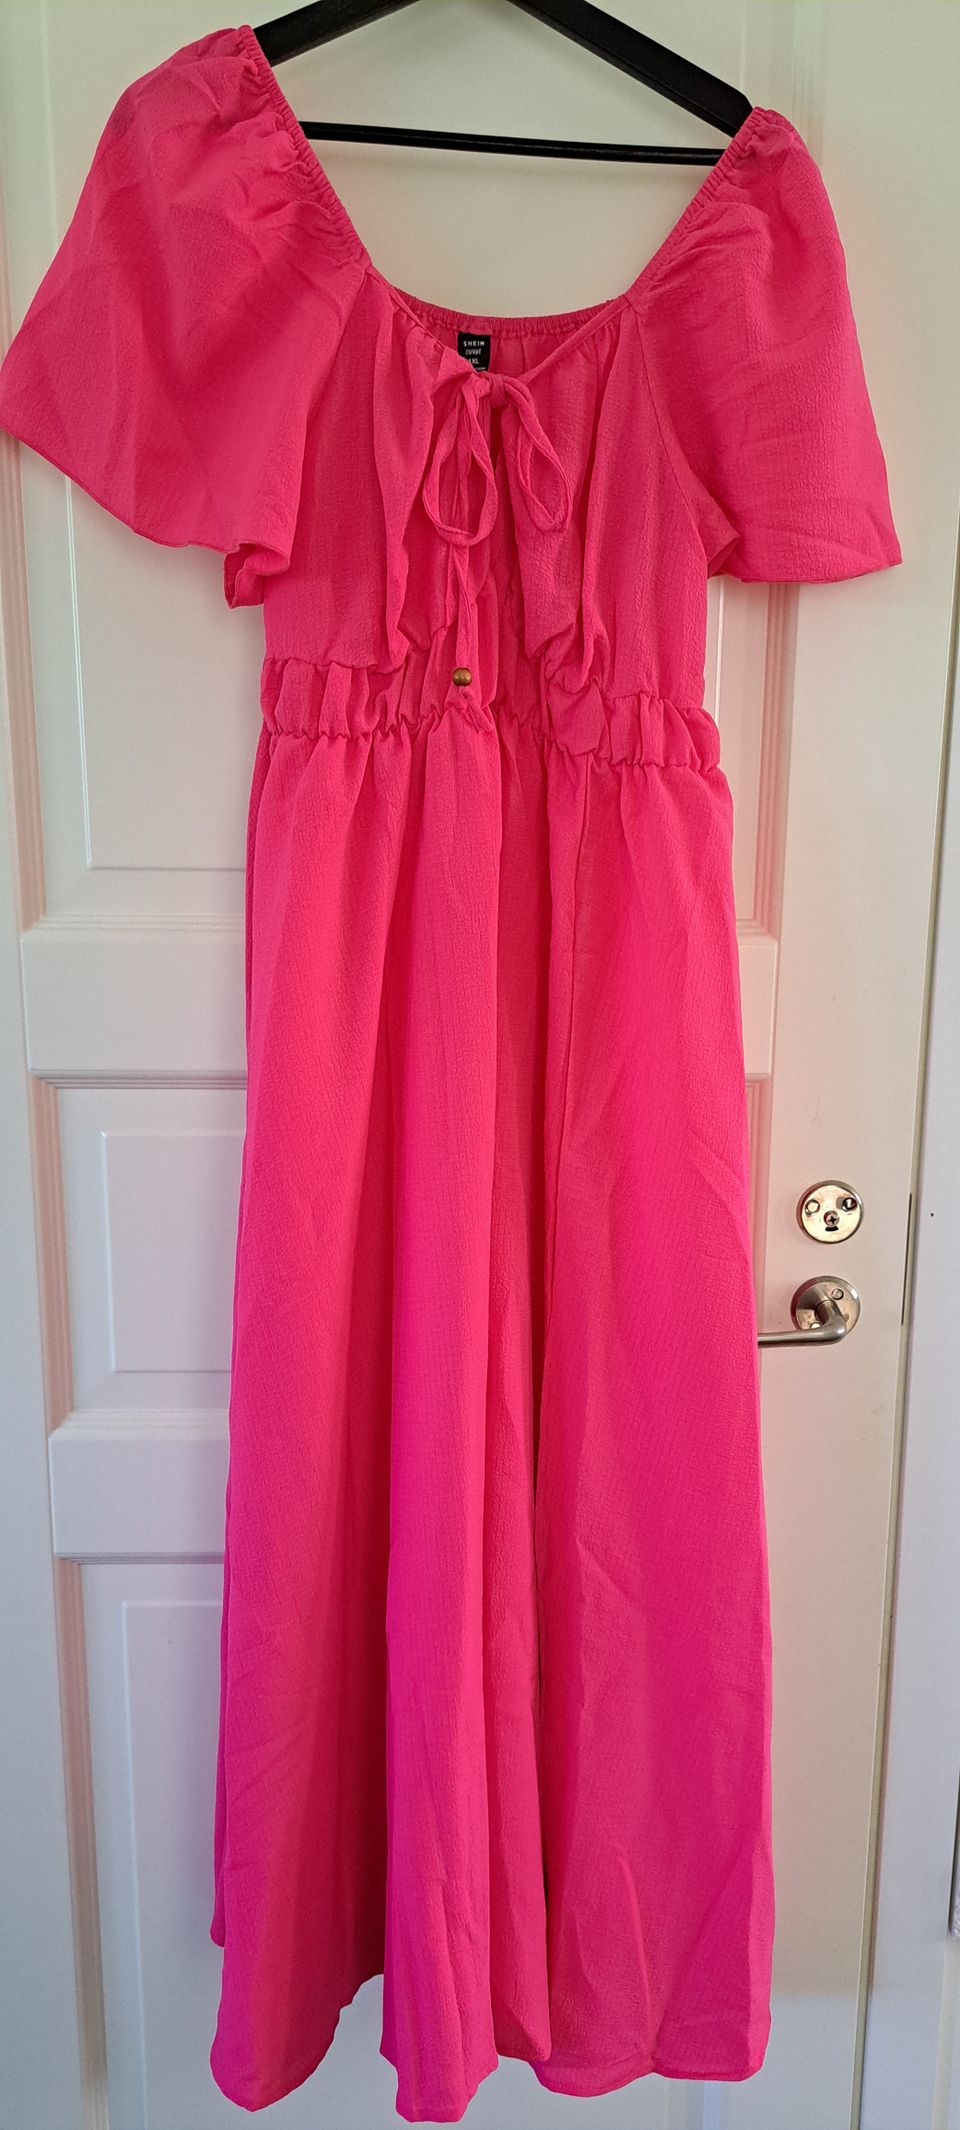 Pinkki mekko, koko 1XL